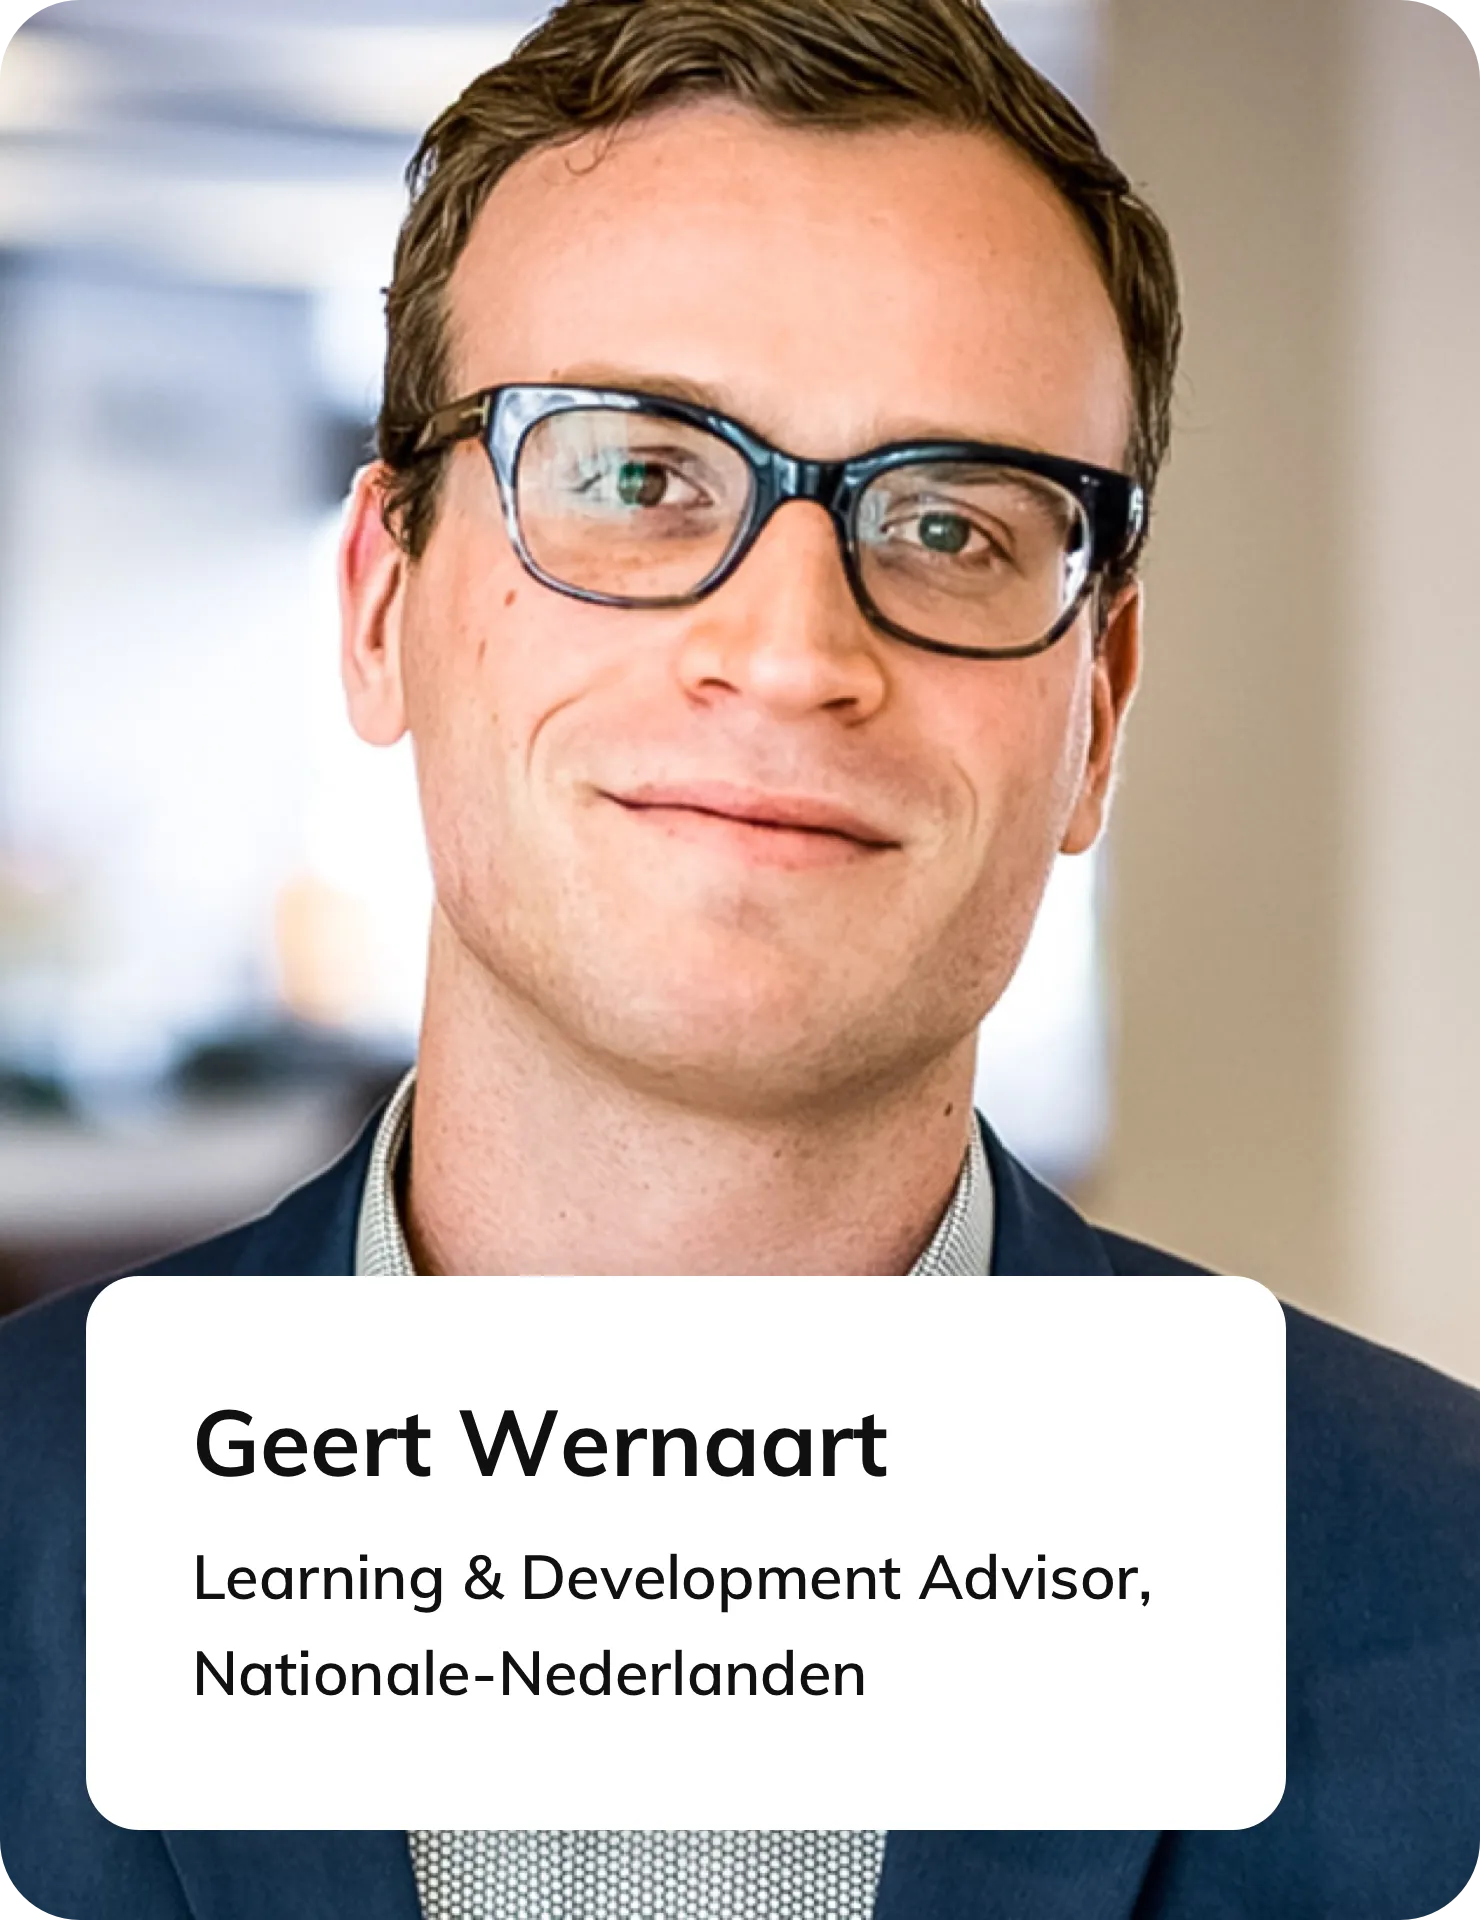 Geert Wernaart, Voormalig Learning & Development Advisor bij Nationale Nederlanden